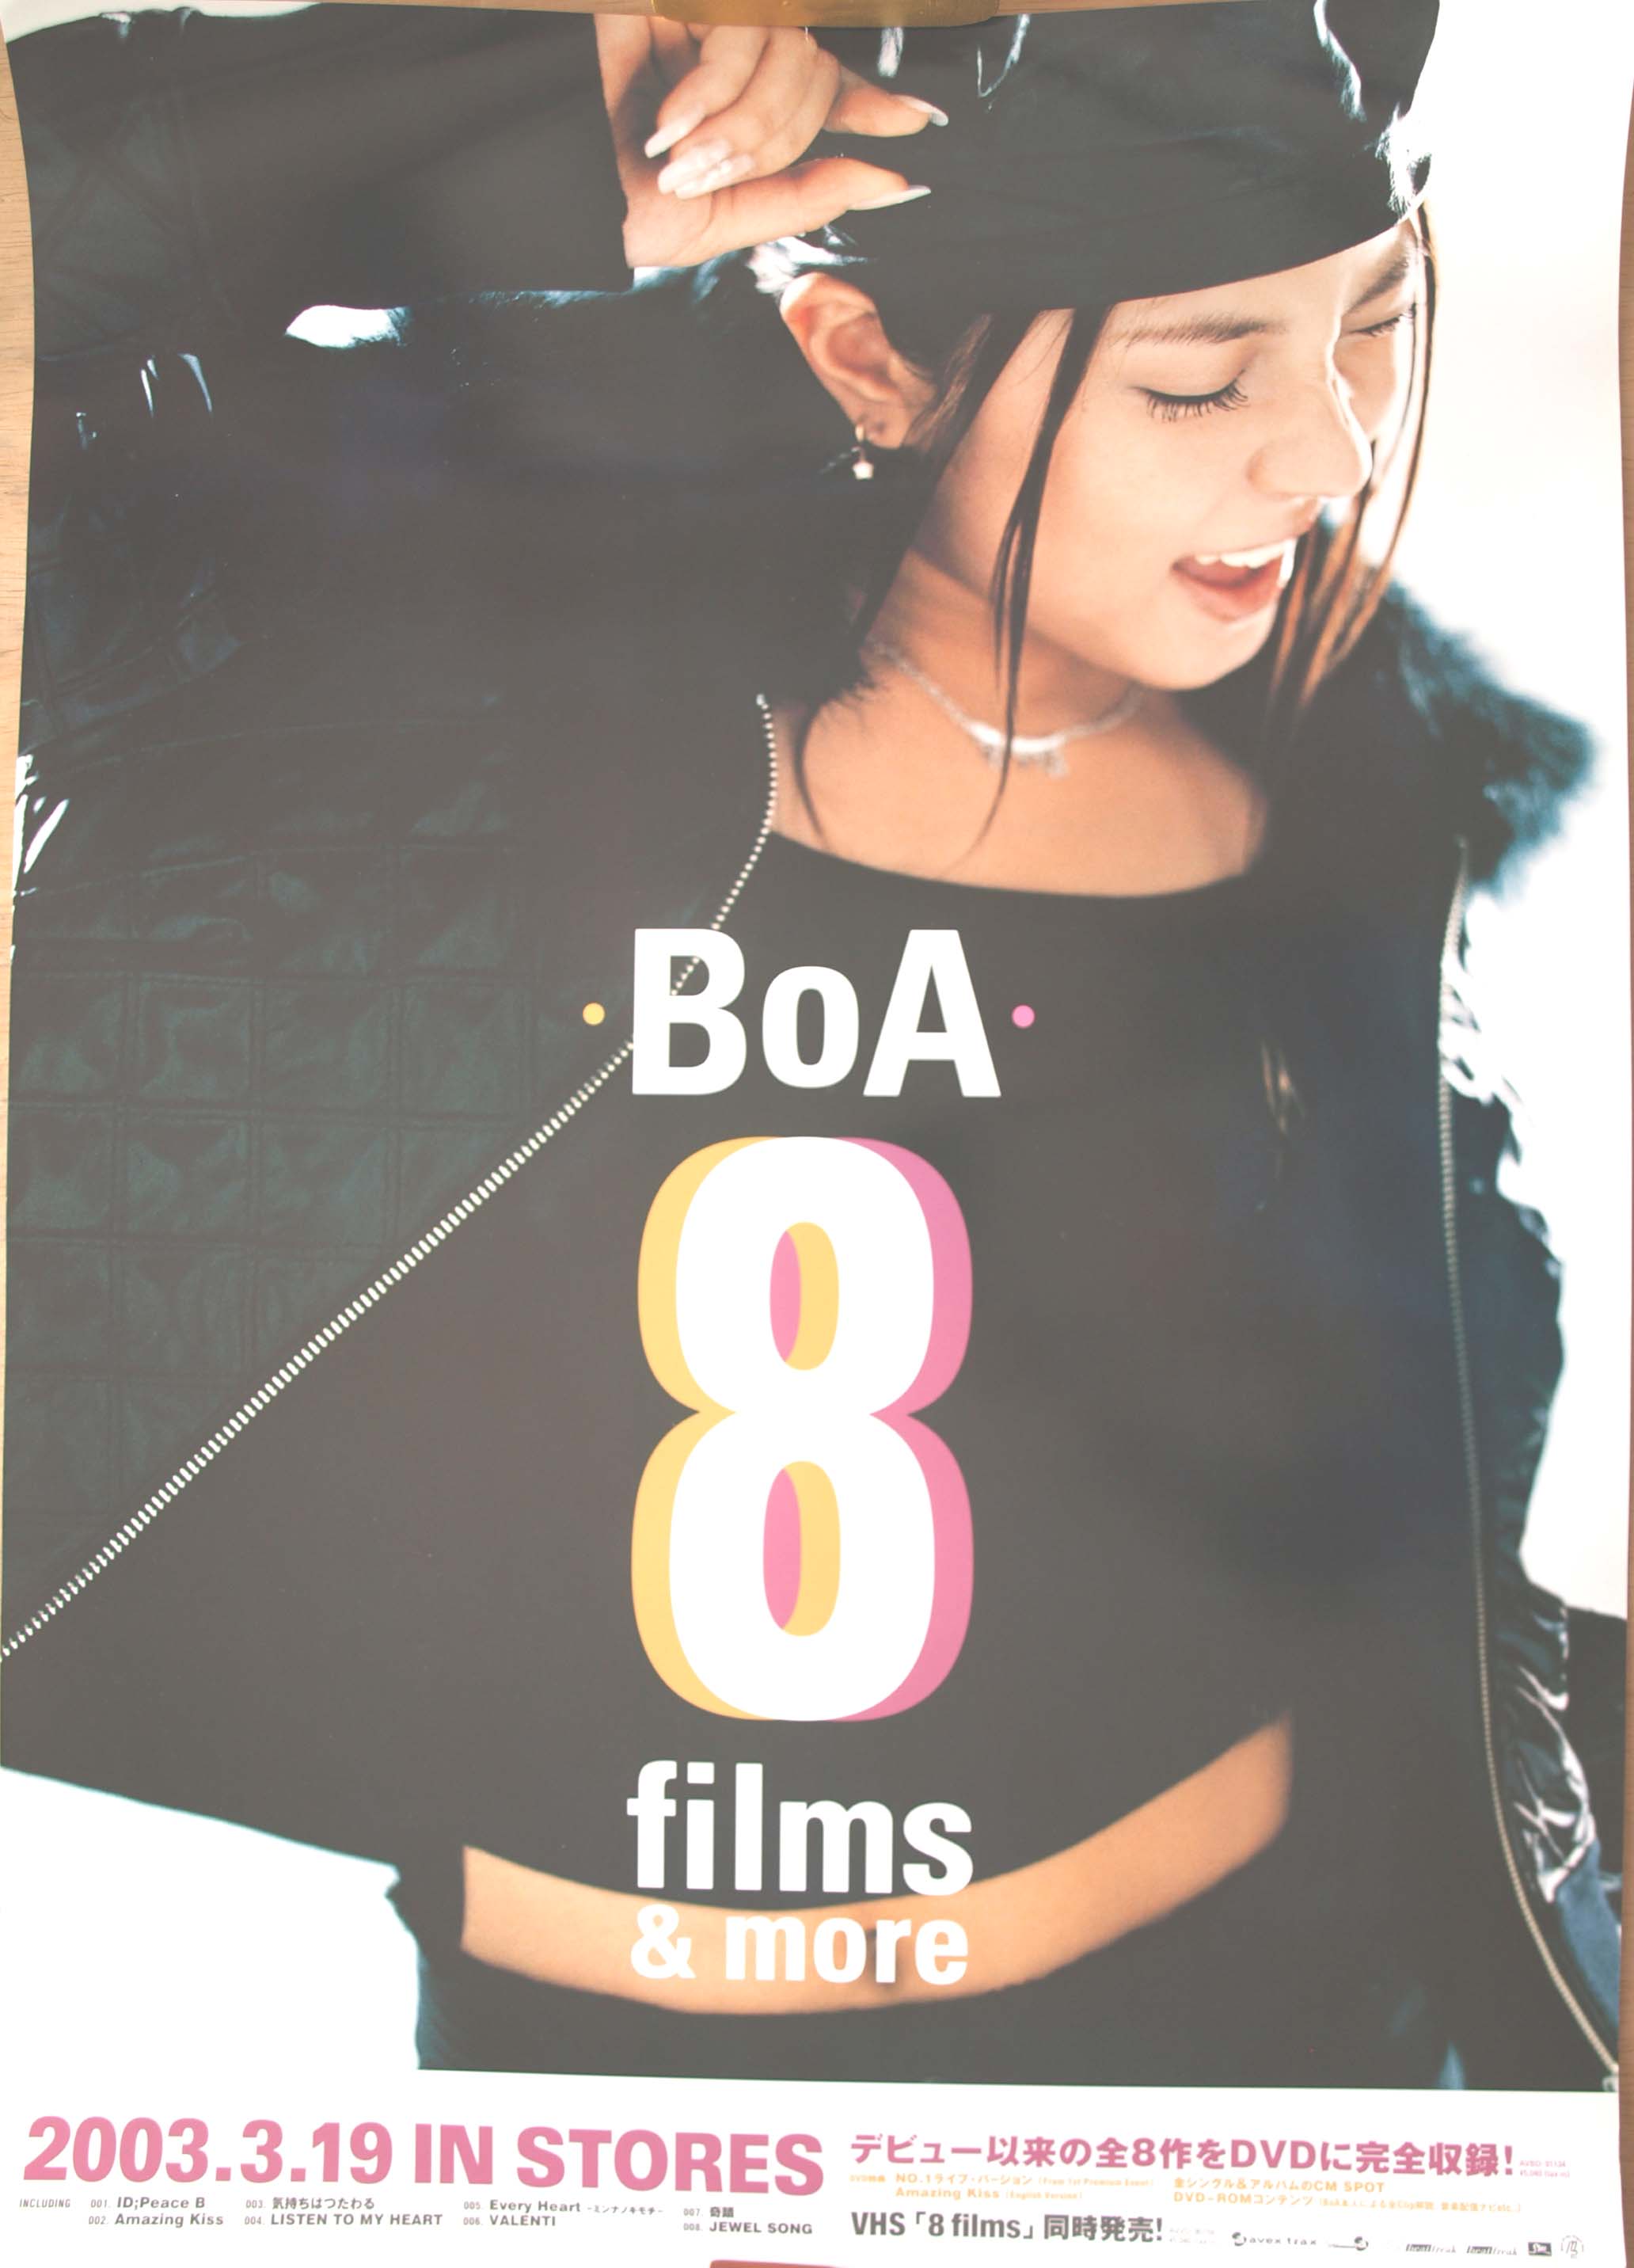 BoA 「8 Films & more」のポスター